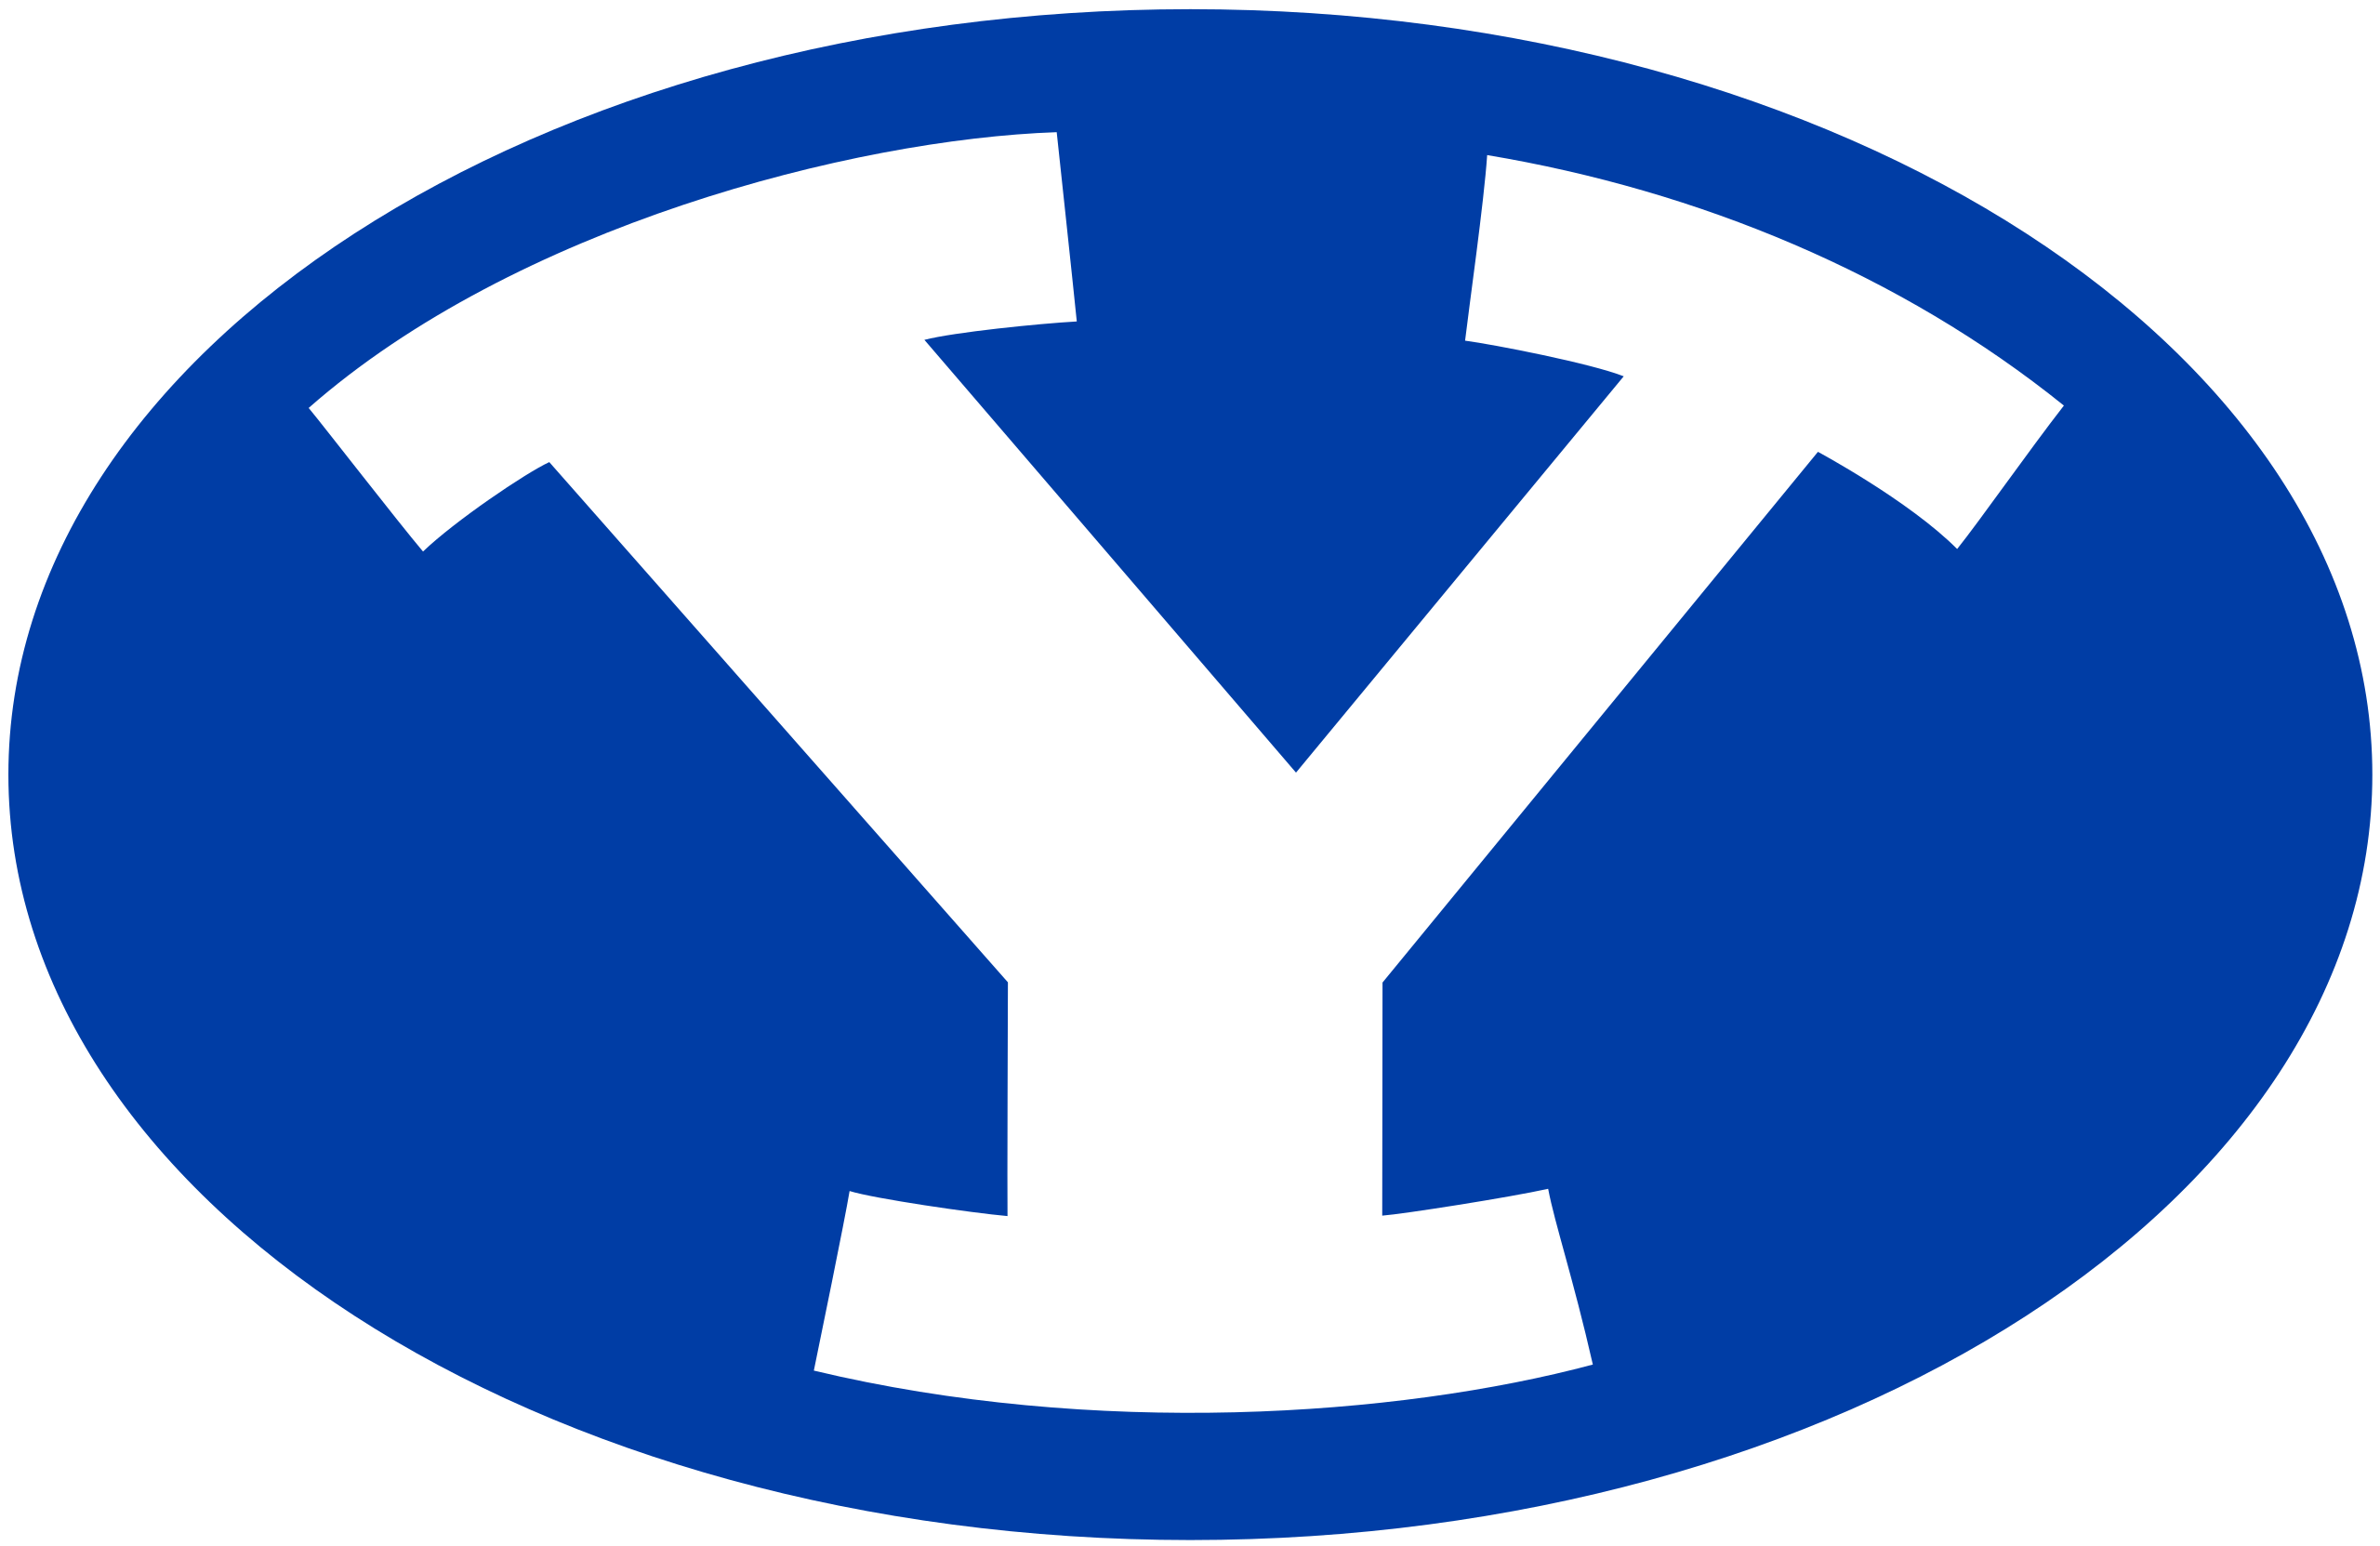 BYU_Cougars_logo.svg-1